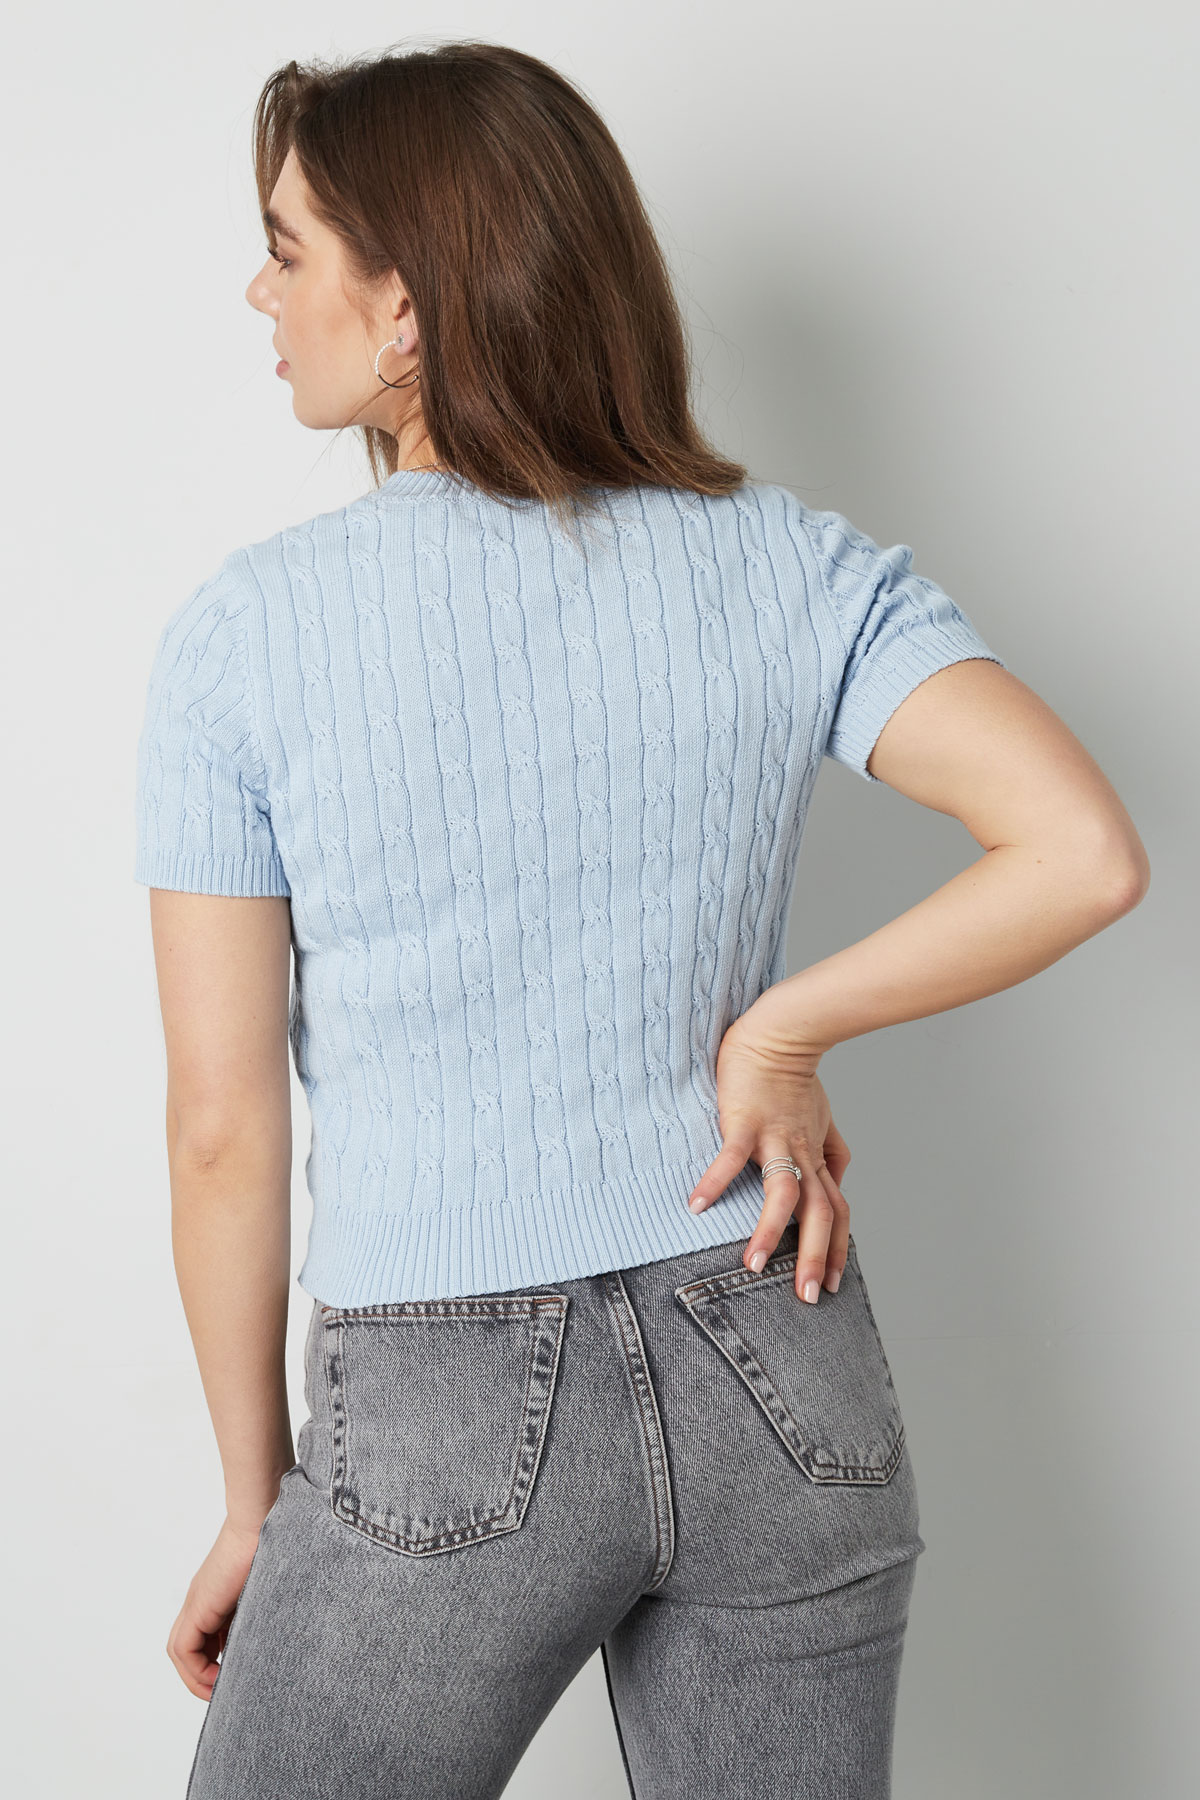 Jersey de punto con trenzas y manga corta pequeño/mediano – azul claro Imagen10